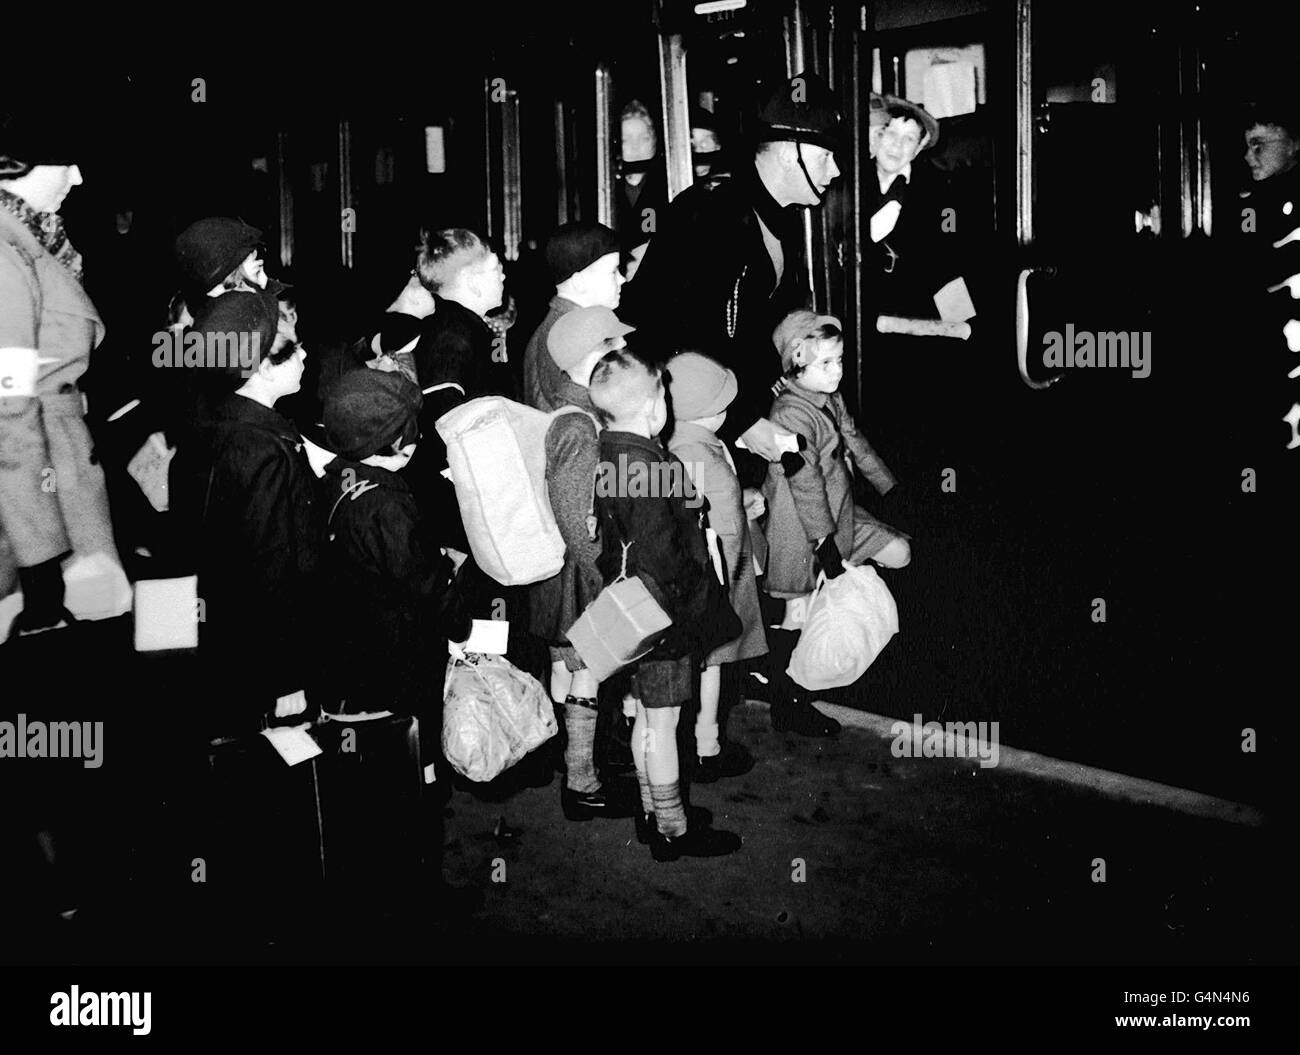 Los evacuados salen de una estación de Londres hacia el País Occidental al comienzo de la Segunda Guerra Mundial. Los niños llevan sus máscaras de gas en cajas de cartón atadas con cuerdas. Septiembre 1939. Foto de la colección de la Segunda Guerra Mundial de PA. Foto de stock